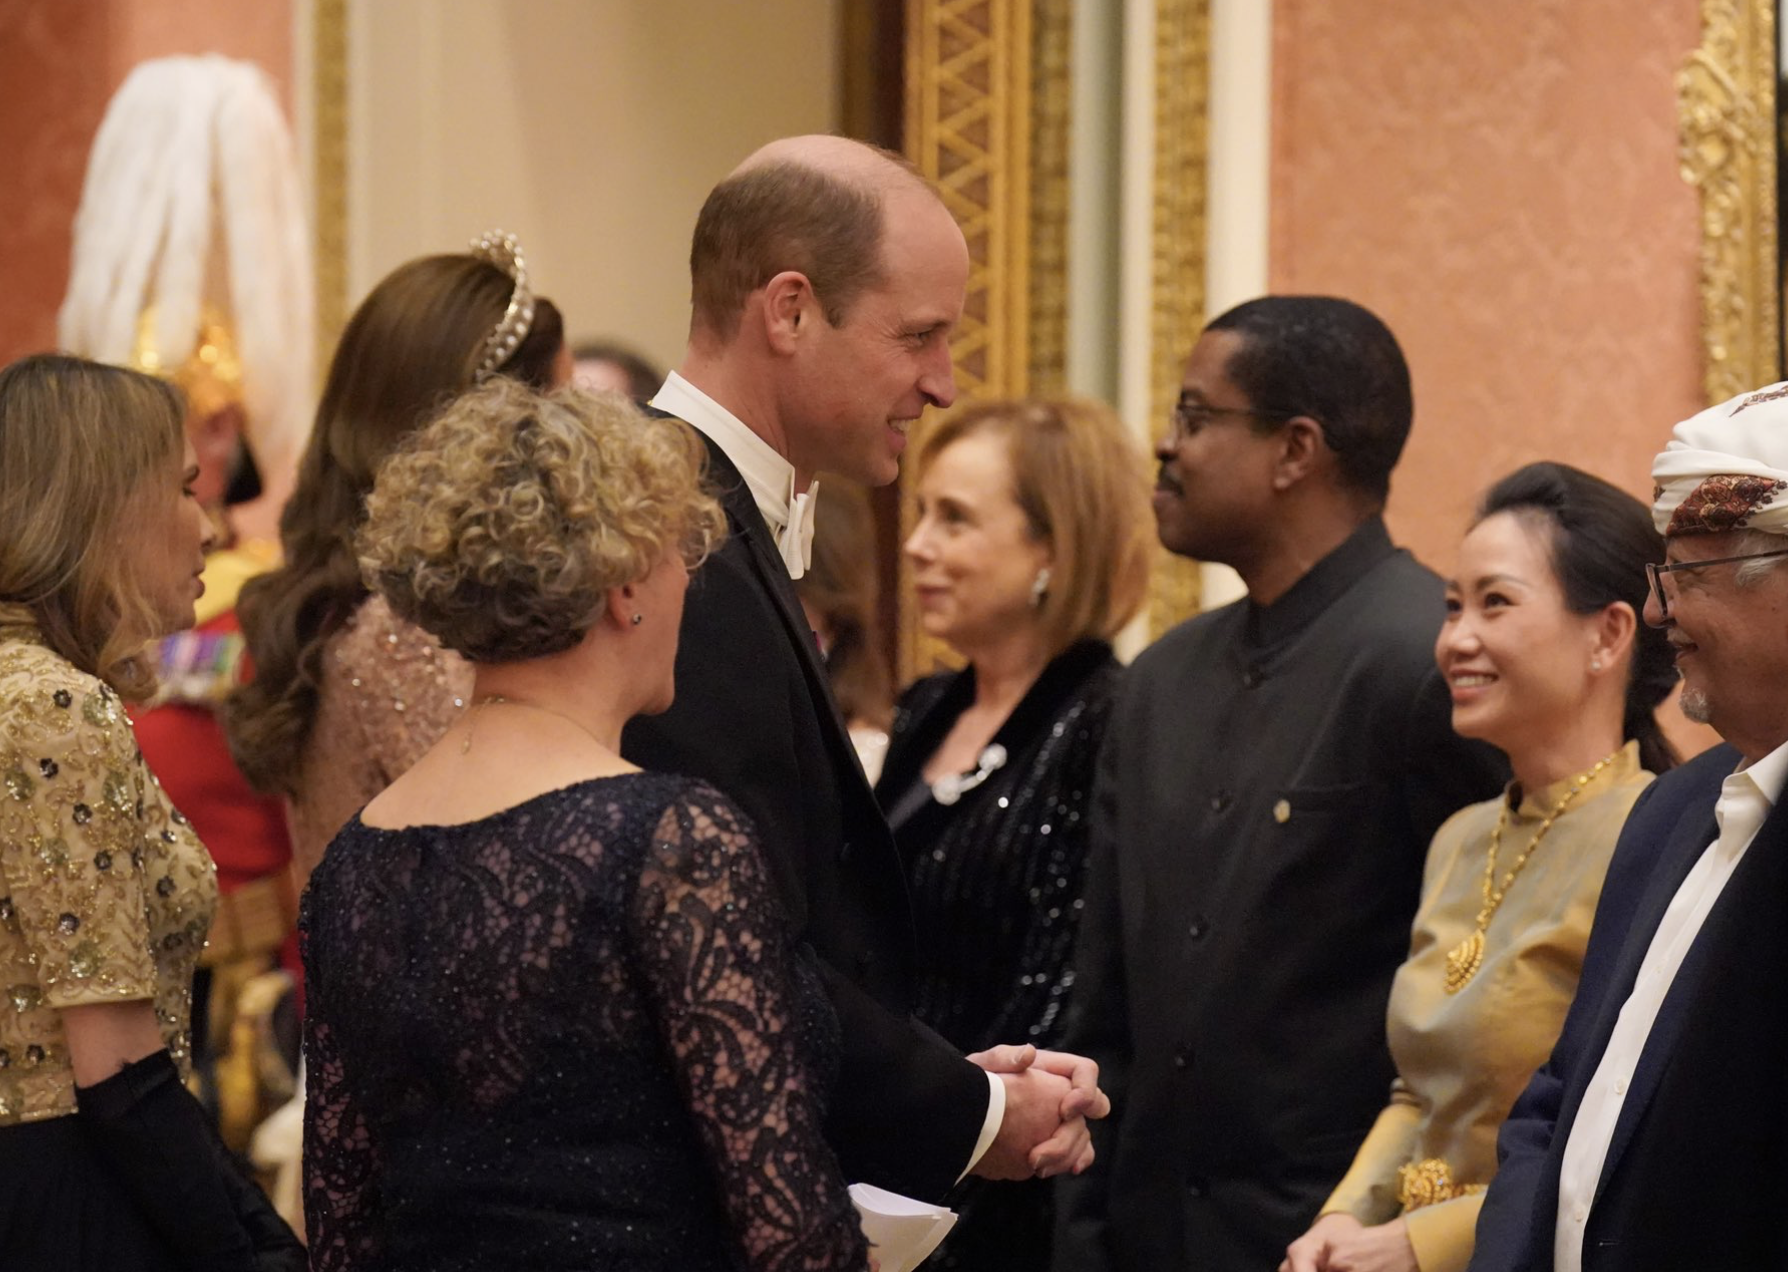 La familia real británica ofrecen una recepción diplomática antes de comenzar las vacaciones navideñas